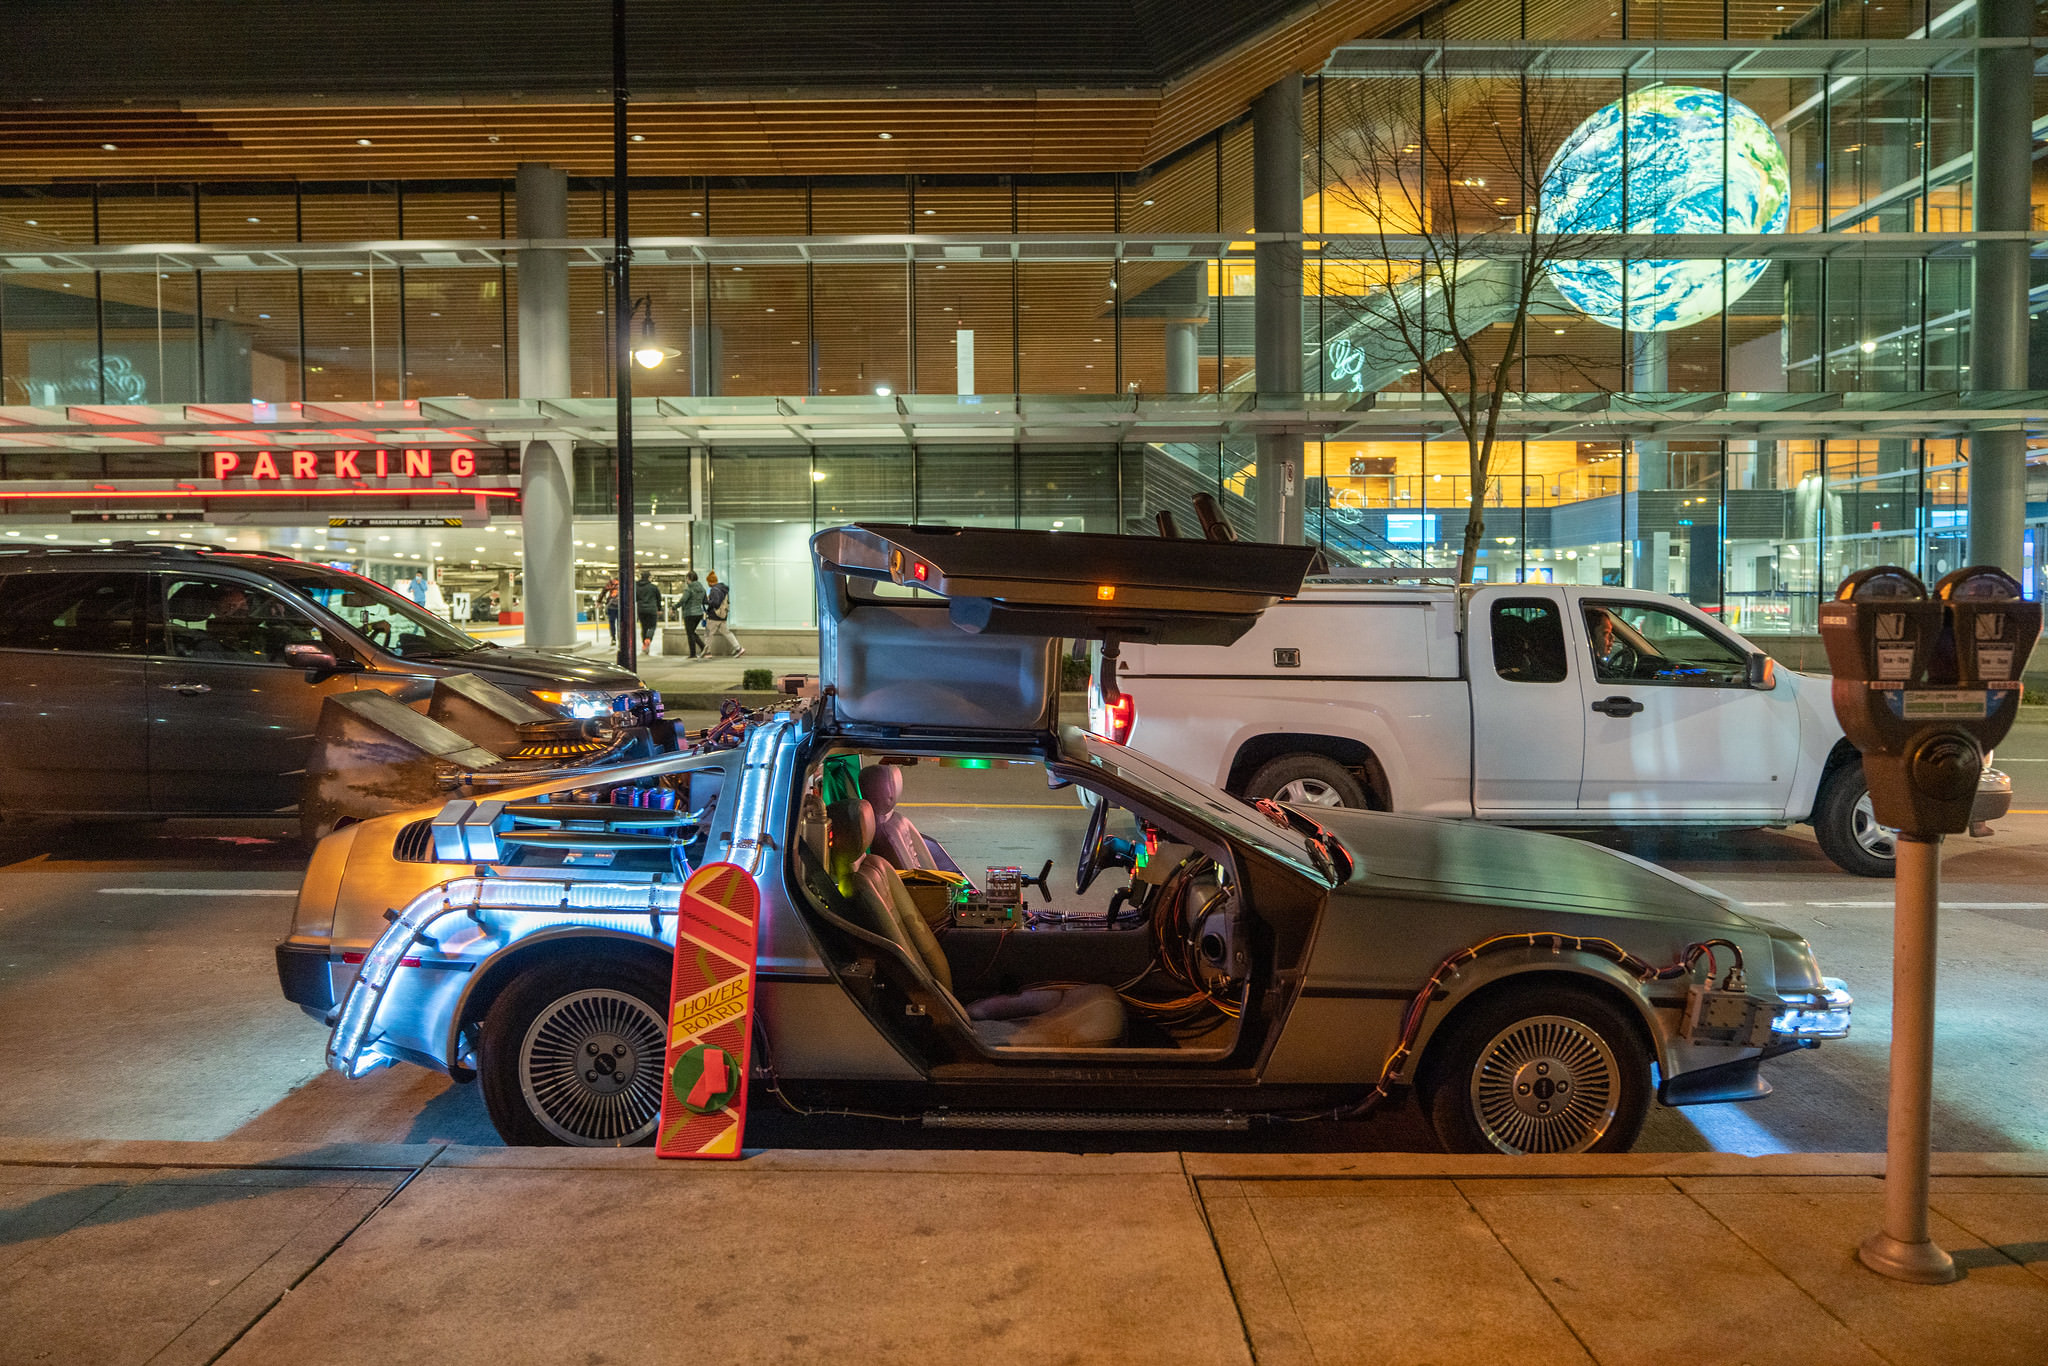 DeLorean 'Time Machine' replica parked near Canada Place, Vancouver, BC.